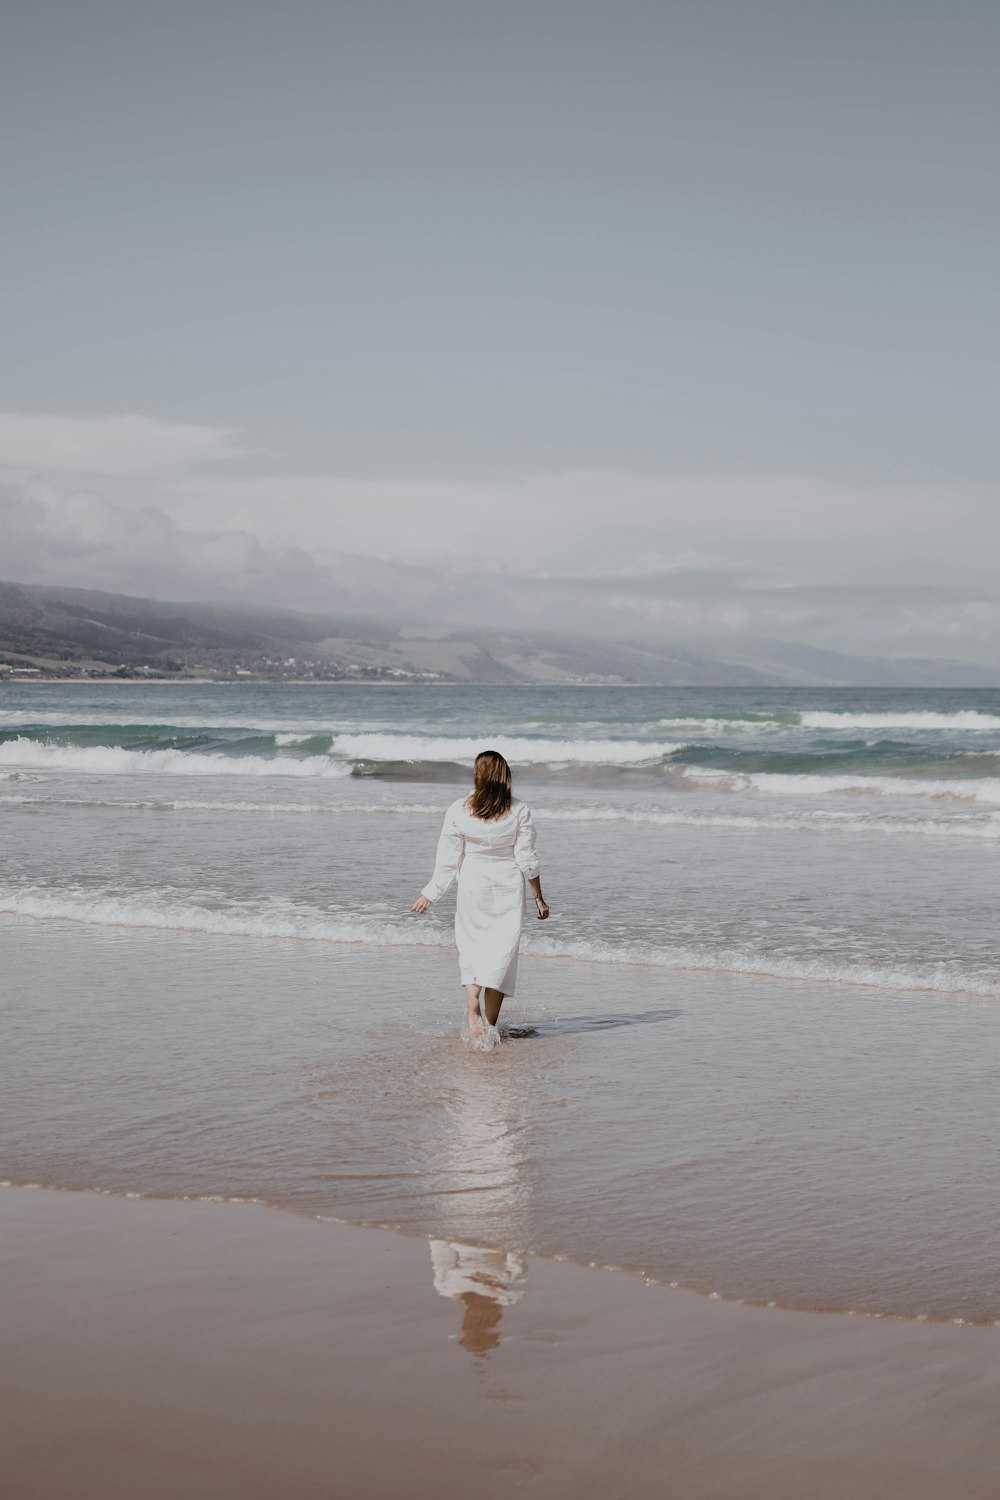 흰 드레스를 입은 여자가 해변을 걷고 있다